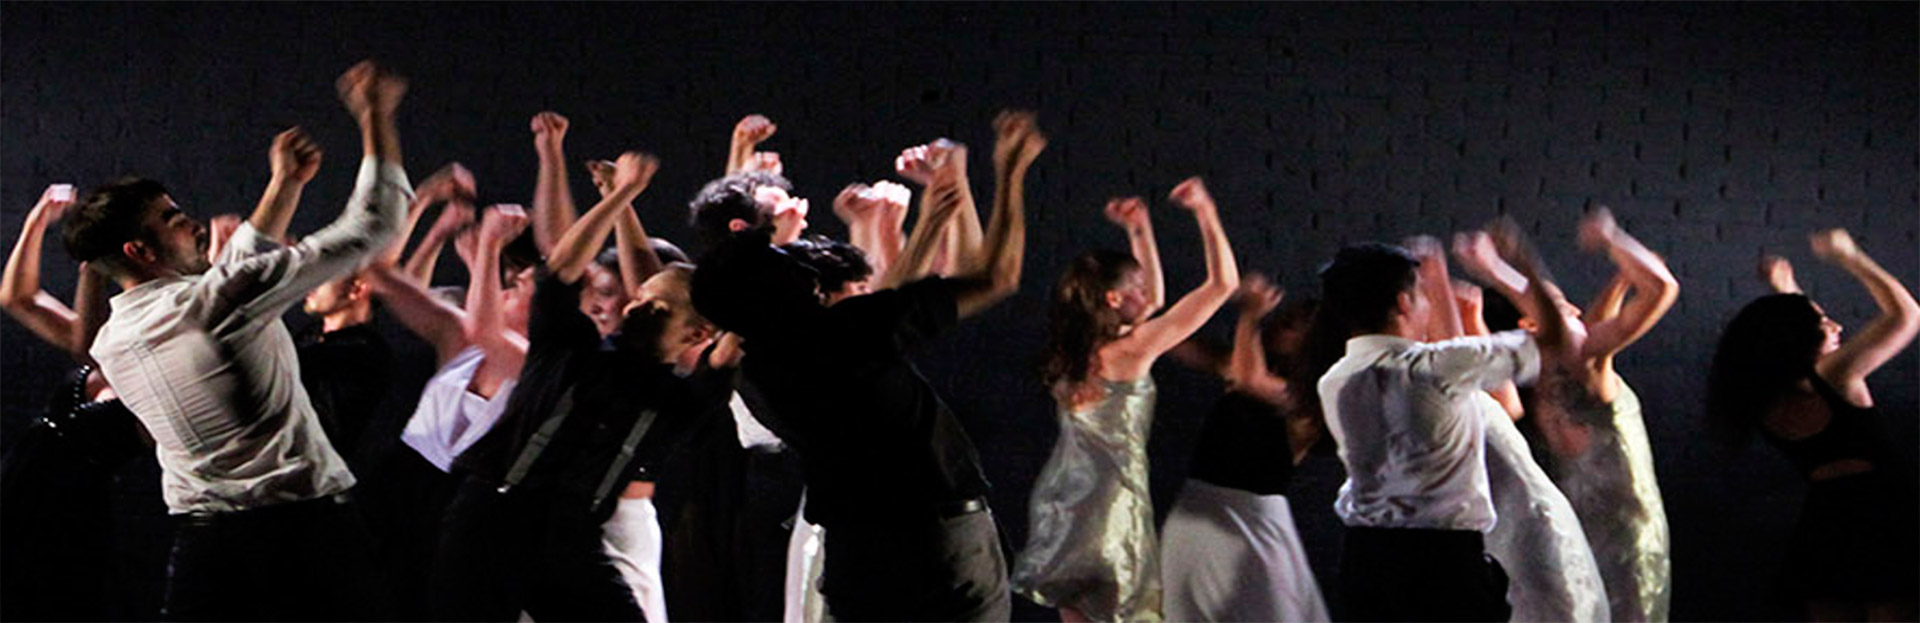 La Compañía de Danza de la UNA la Semana de las Humanidades y Artes de la UNLa